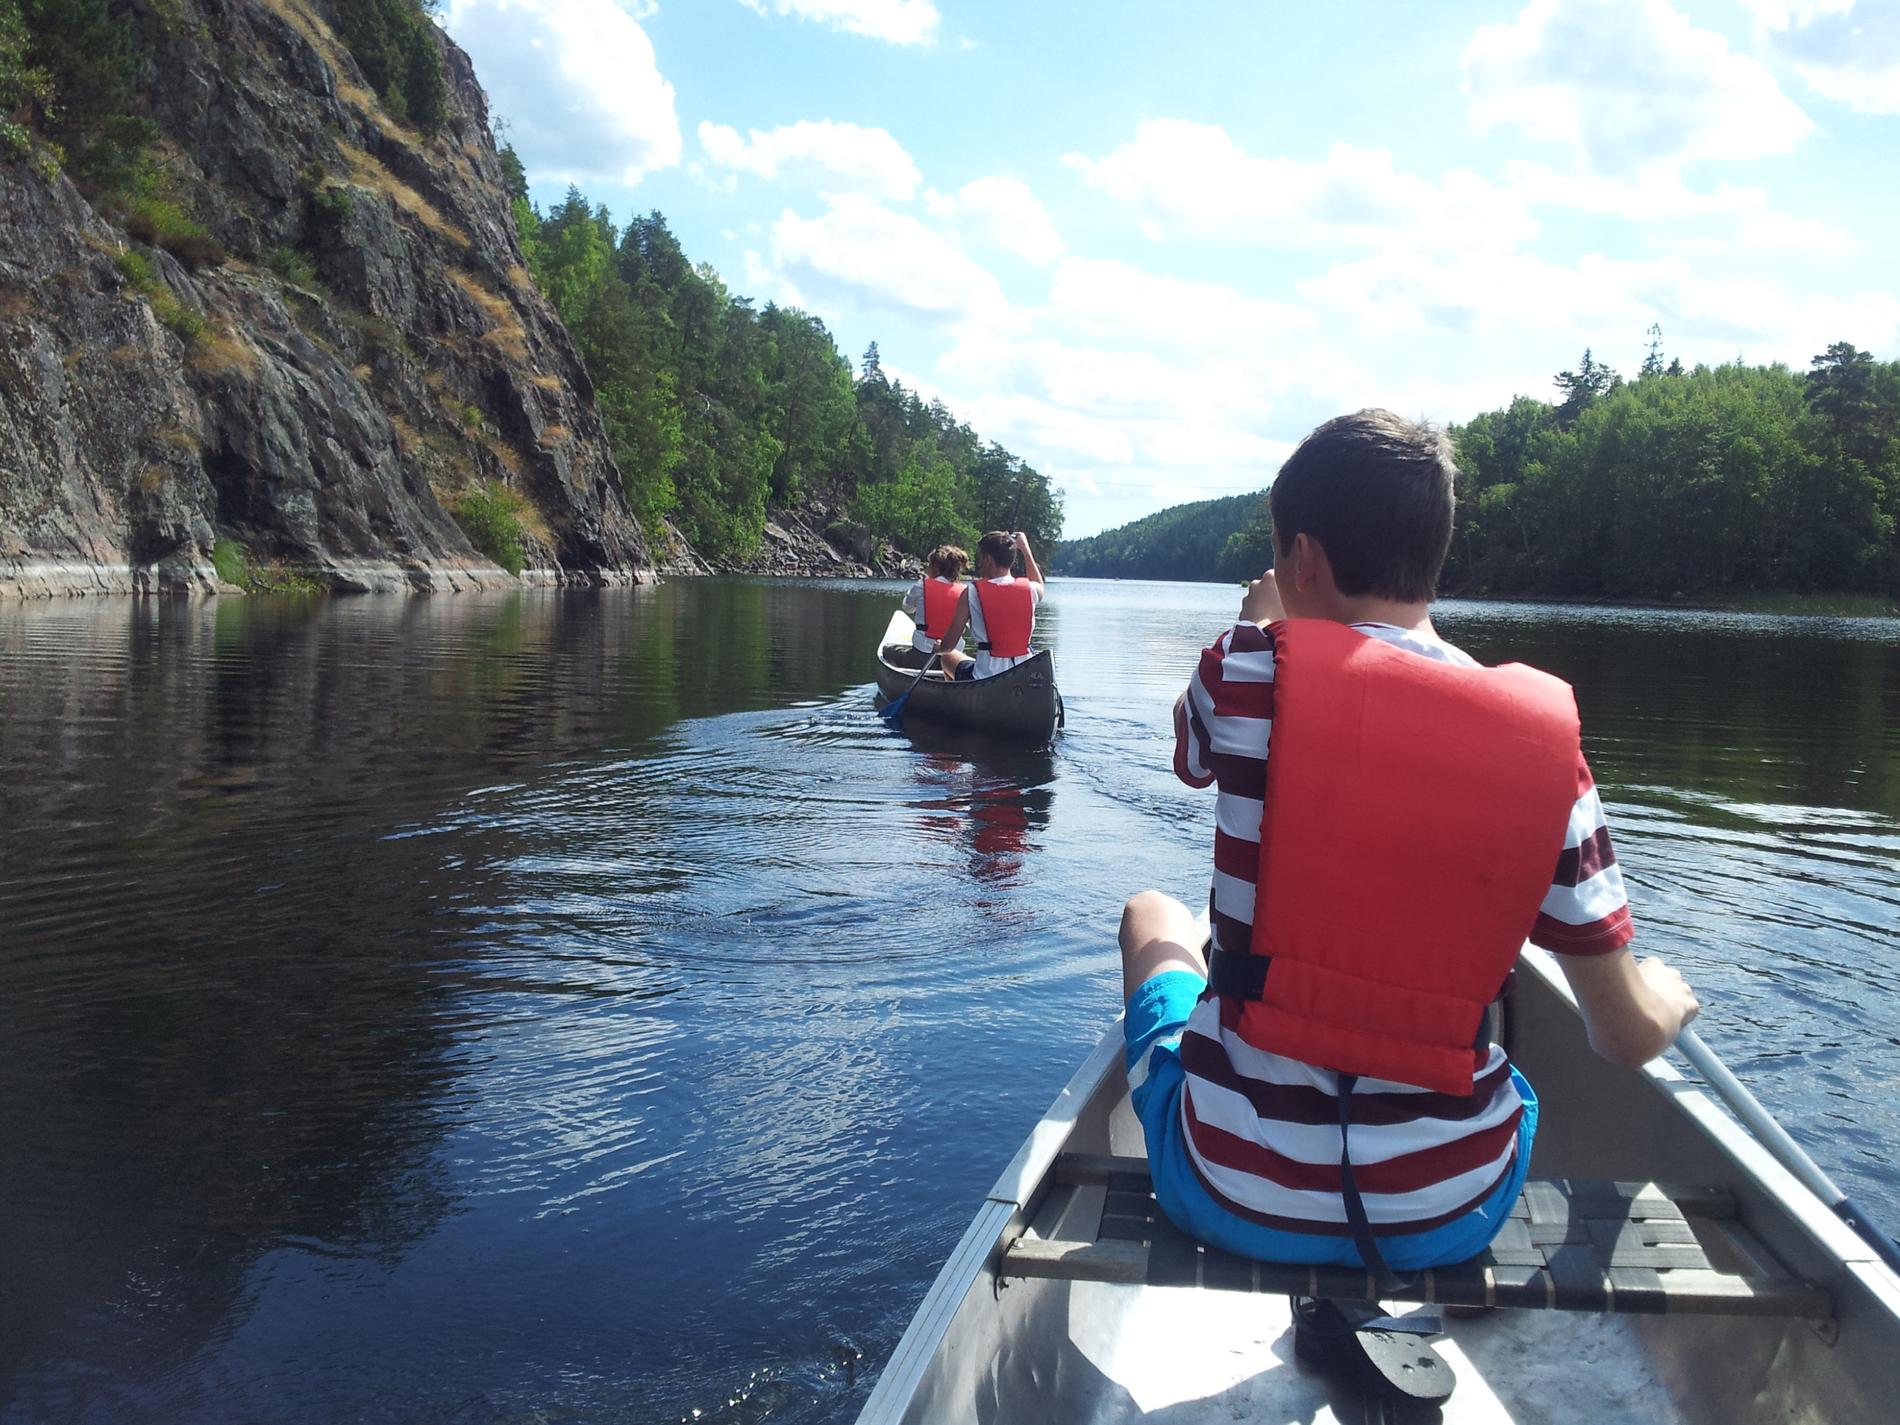 Så kul att få med våra tonårssöner på denna härliga paddlingstur på natursköna sjöar i Sörmland